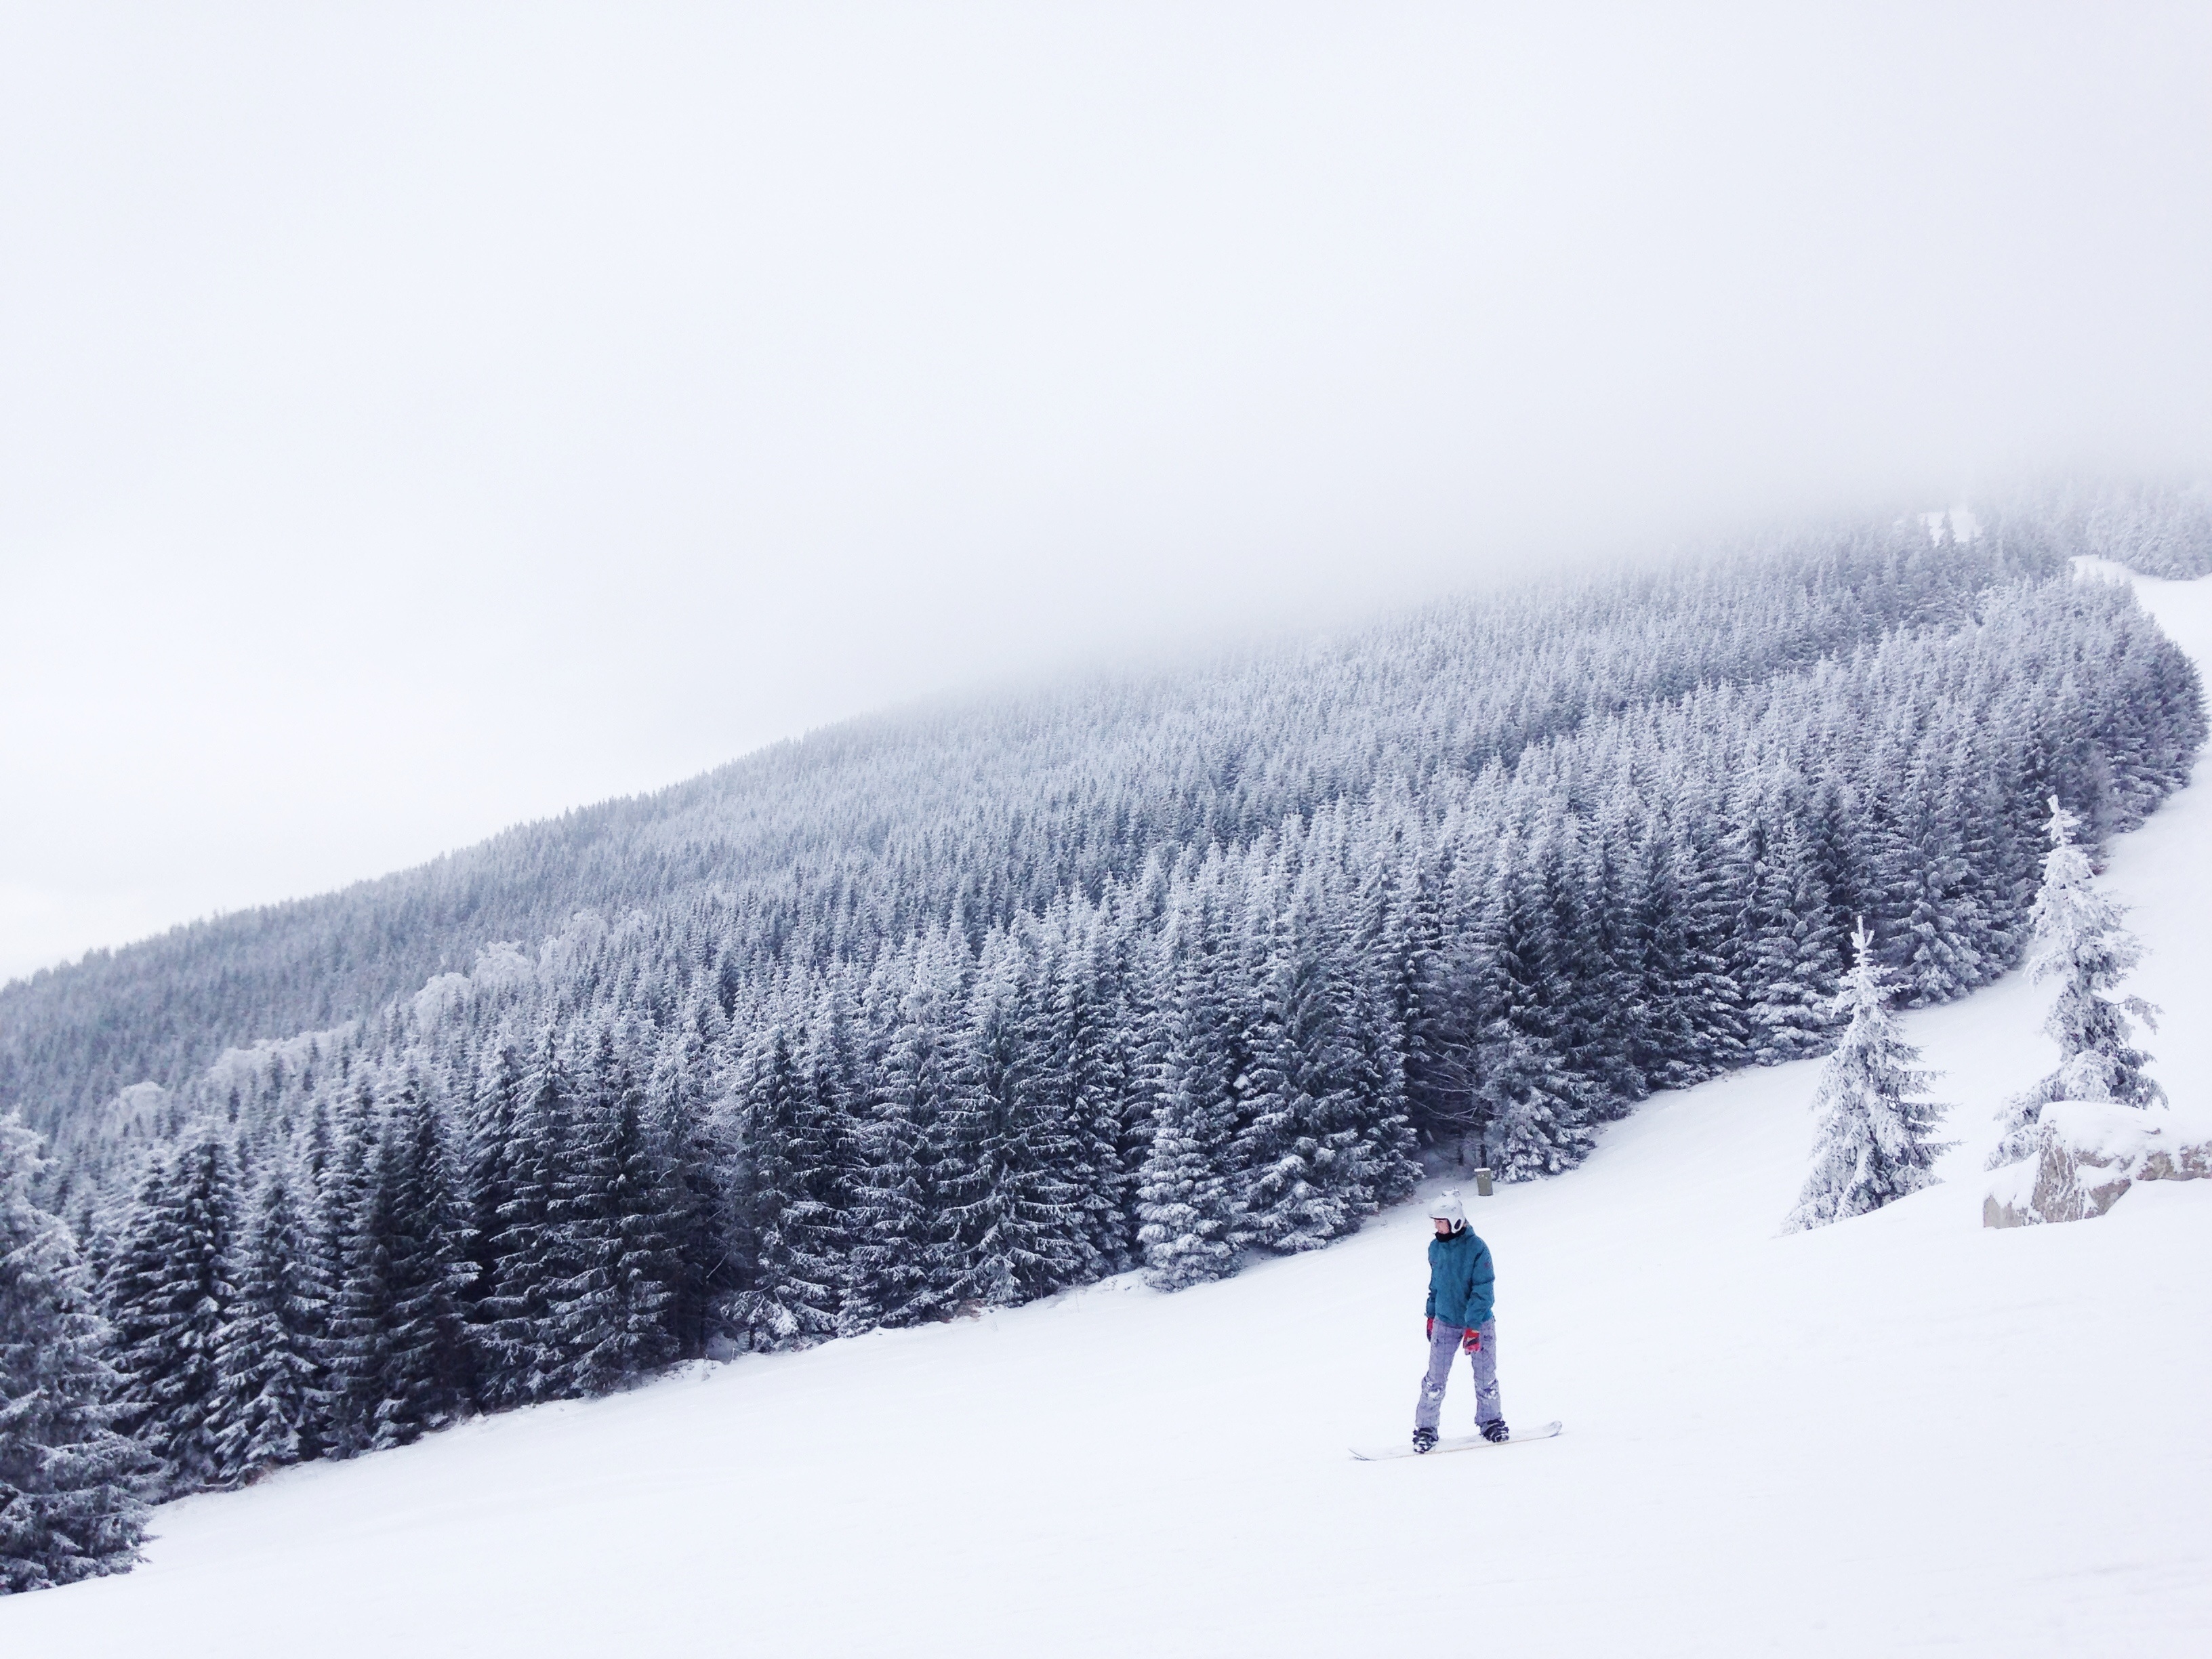 Snowboard en la nieve ,fotos de Tomas Kodydek, a través de unsplash